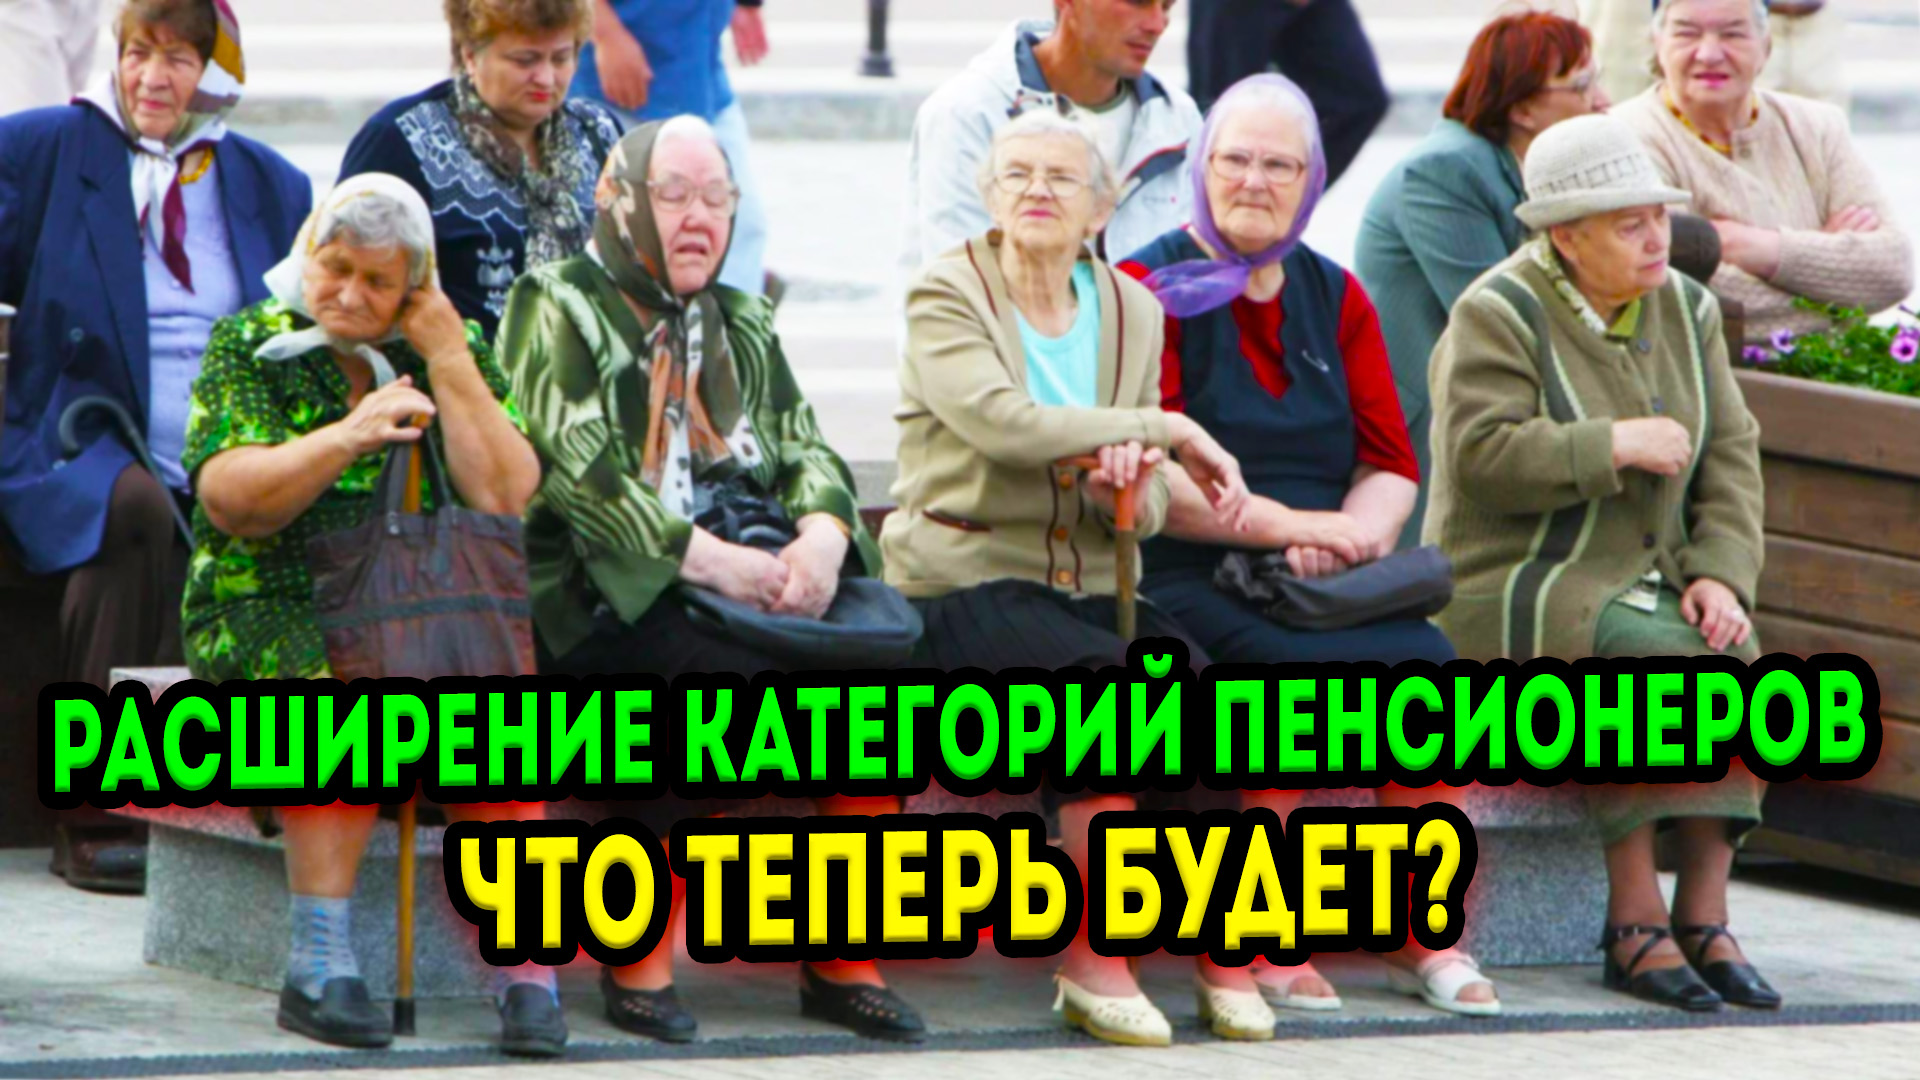 Какой категории пенсионеров. Категории пенсионеров в России. Смешные пенсионеры. Пенсионеры за пенсией. Приколы про пенсионеров.